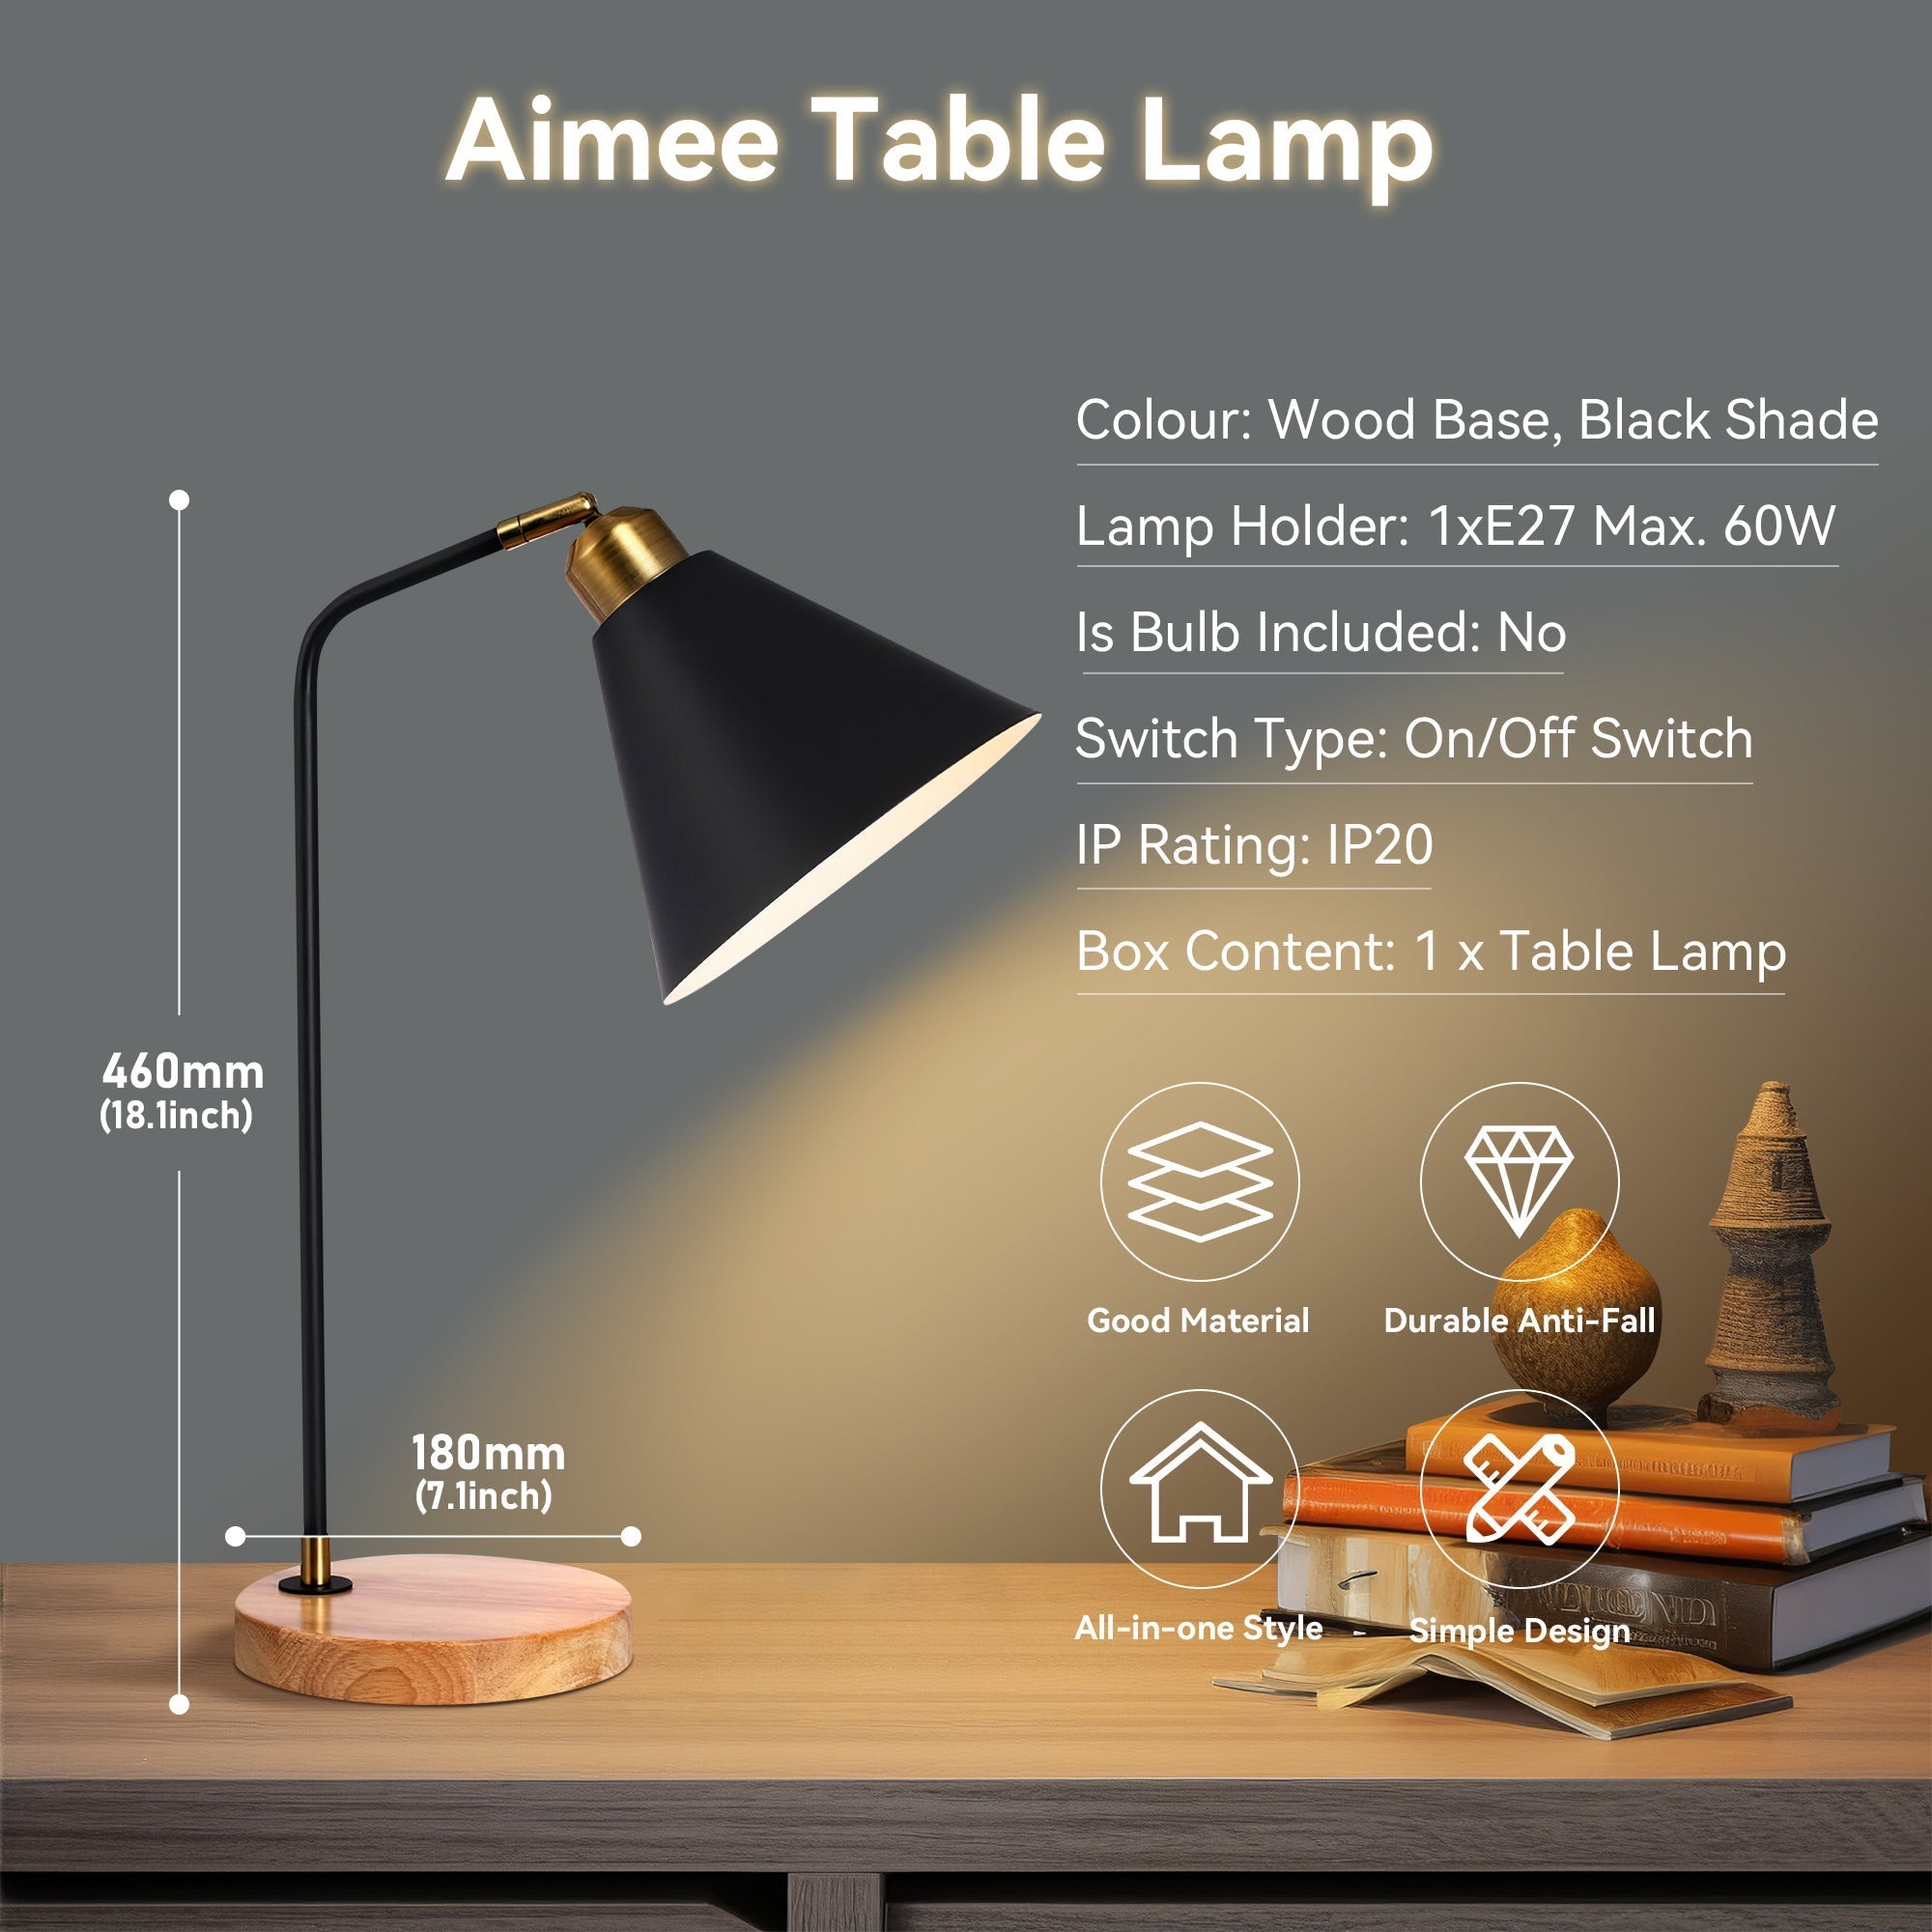 Aimee Table Lamp - Black